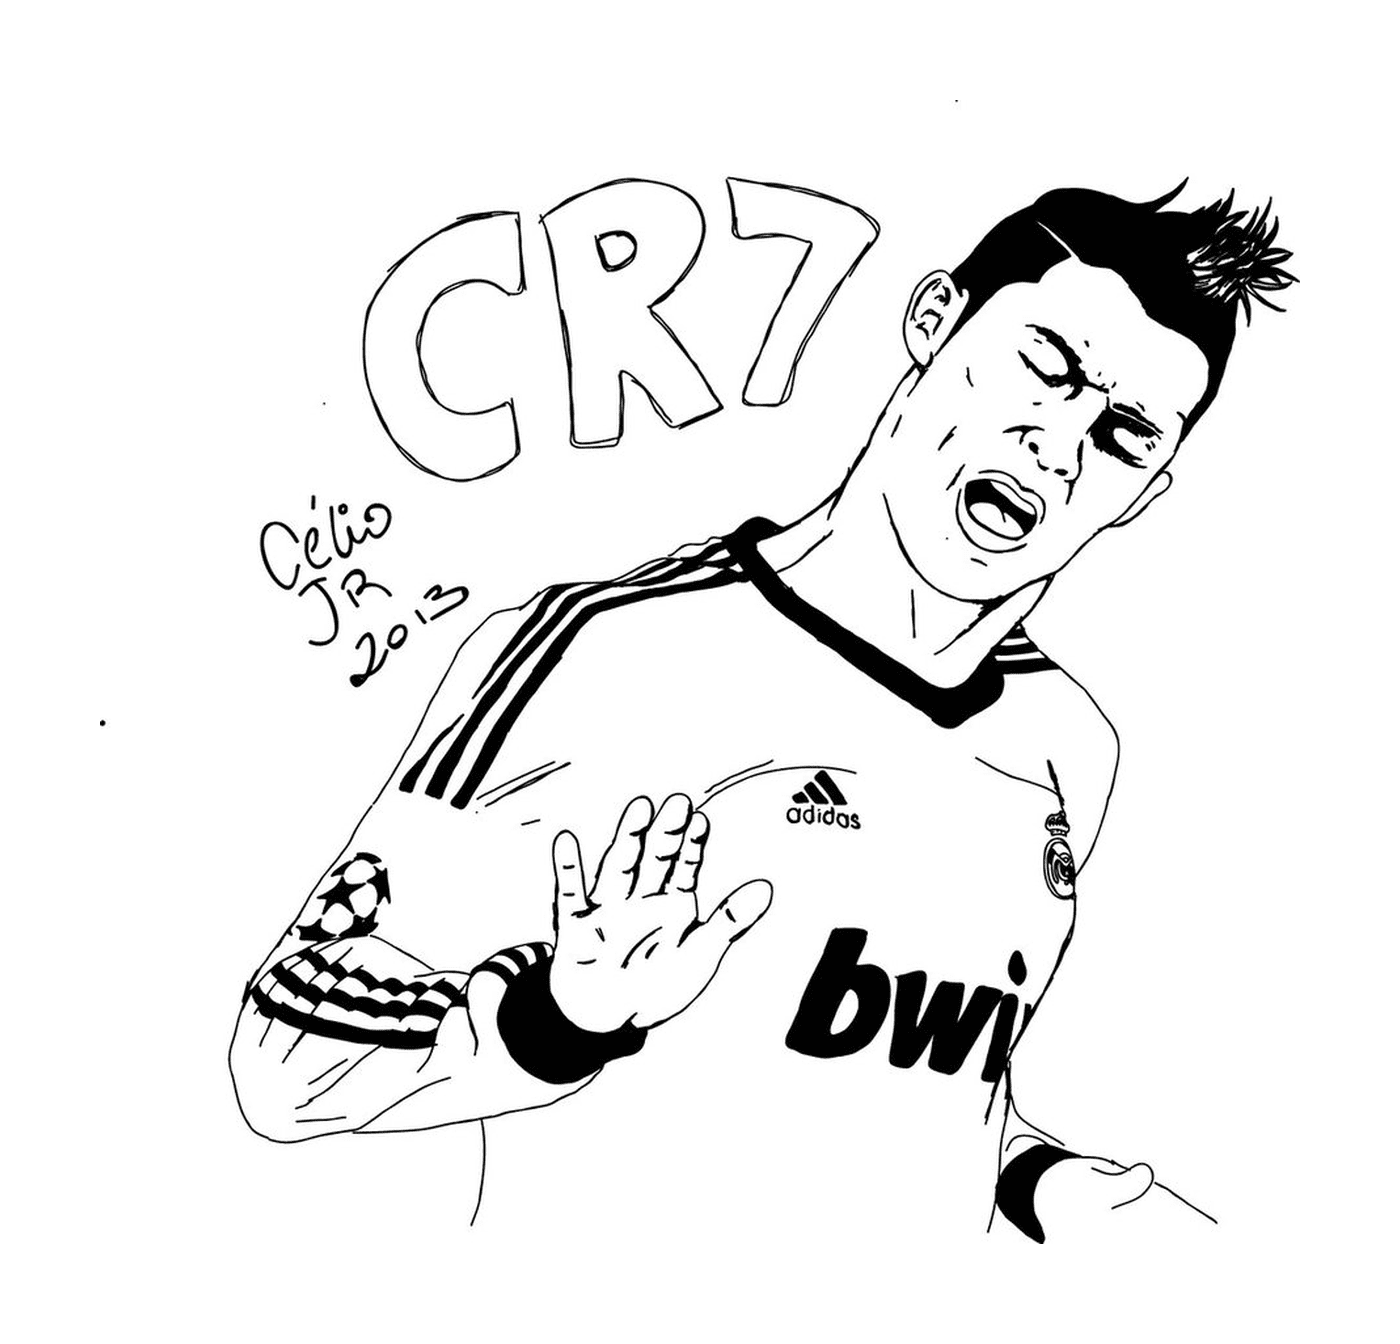  Cristiano Ronaldo celebrates a goal 